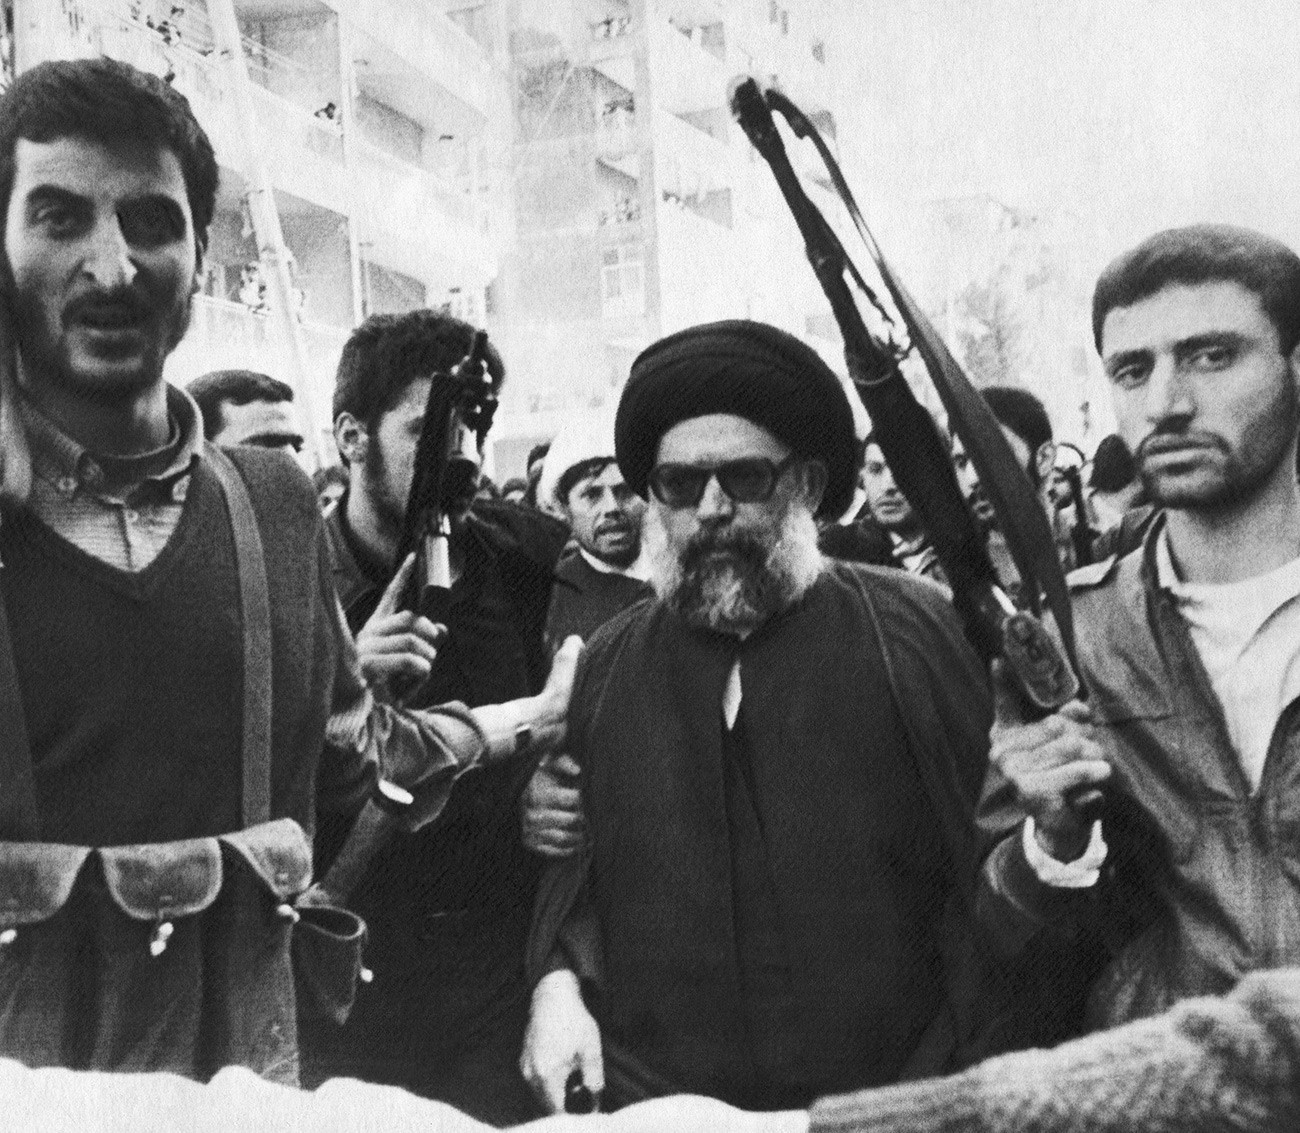 Muhamed Husein Fadlallah u crnom turbanu okružen tjelohraniteljima 9. ožujka 1985. dolazi u džamiju u južnom predgrađu Beiruta (Libanon) na pogreb 75 žrtava eksplozije miniranog automobila.

